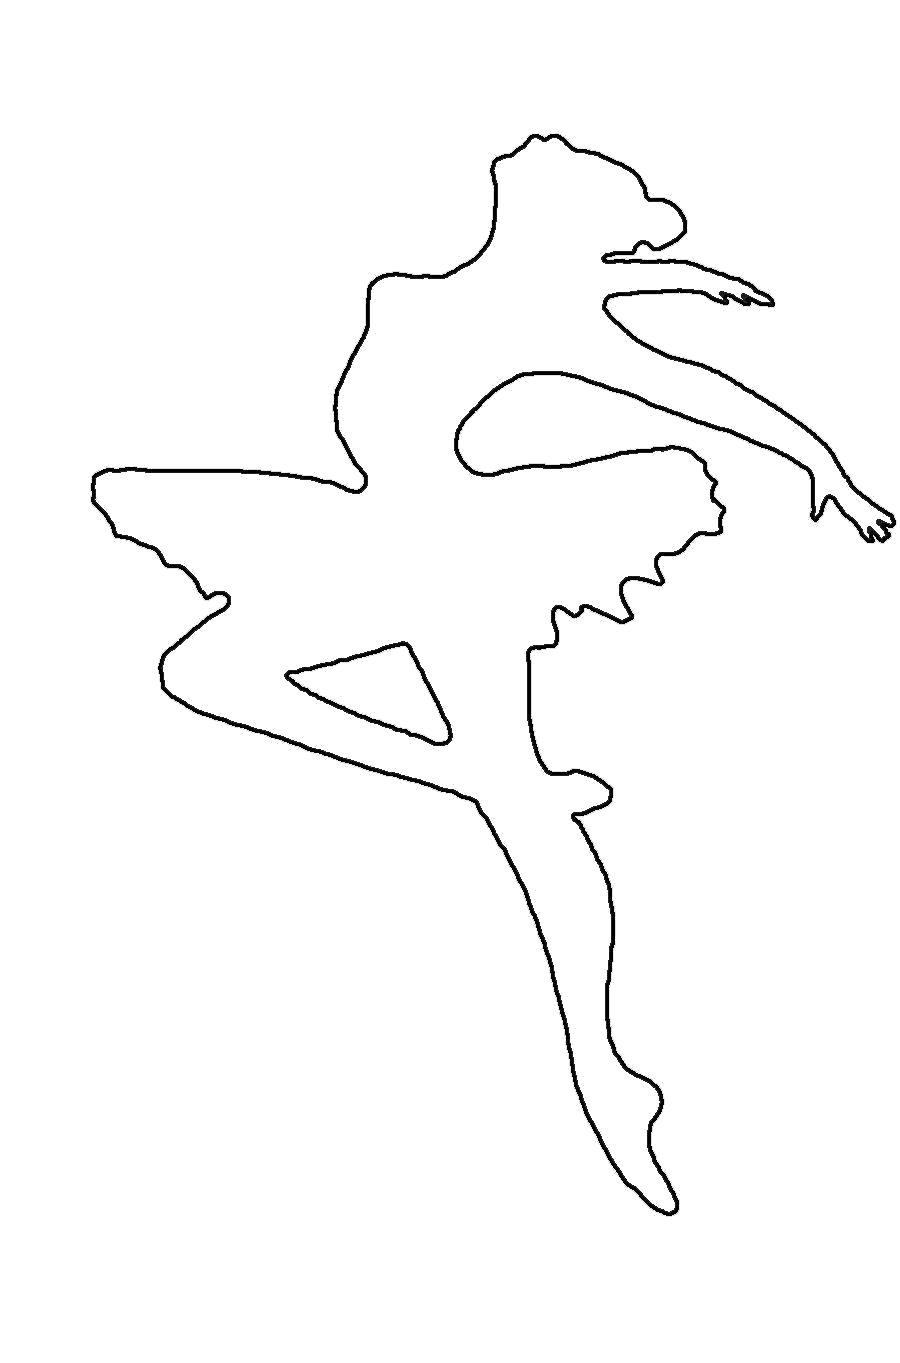 Раскраска  шаблоны балерин балерина шаблон для вырезки из бумаги, для детского творчества. Скачать Шаблон.  Распечатать Шаблон